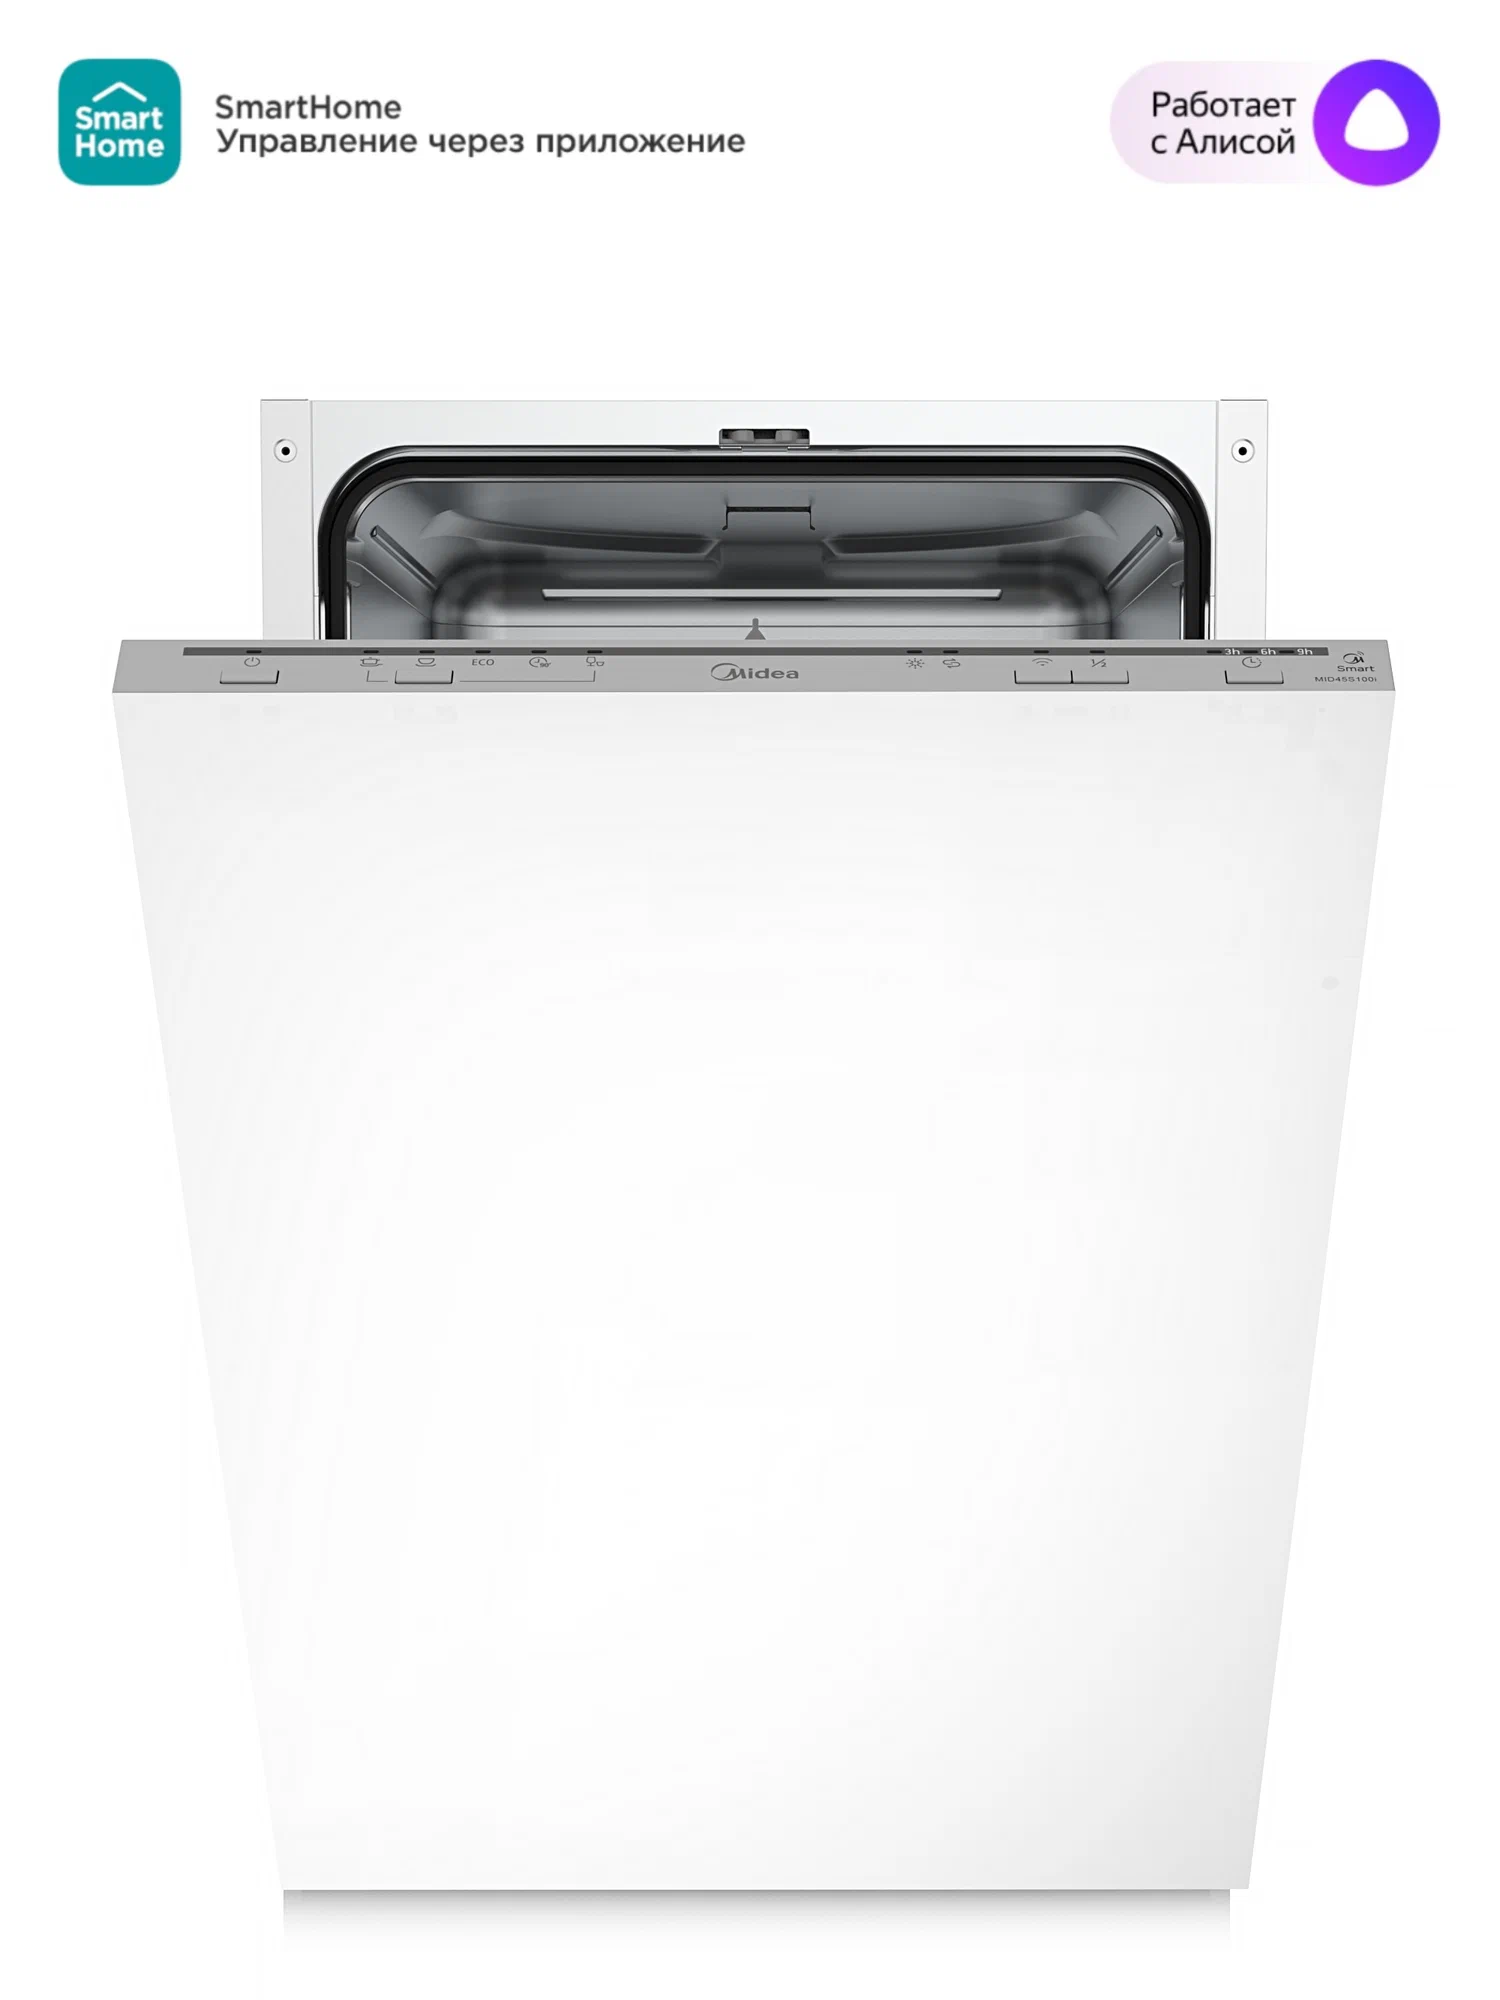 Посудомоечная машина встраиваемая узкая Midea Series 3 MID45S100I, серый (MID45S100I)